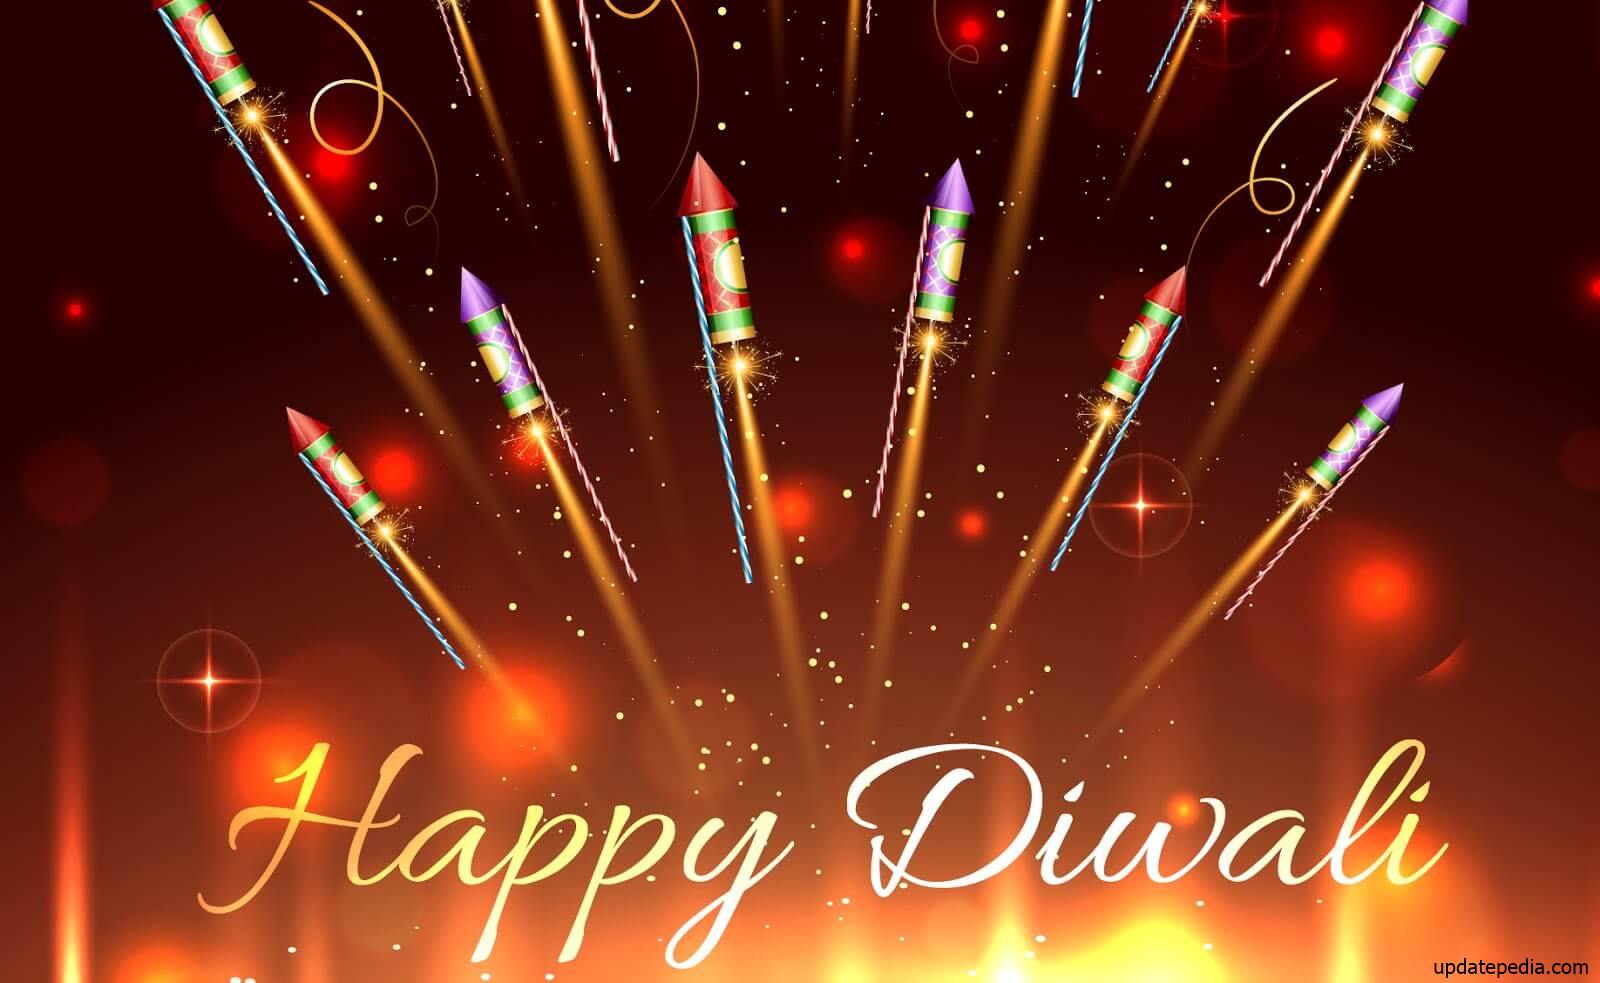 Diwali pictures, Diwali greetings, diwali images, Diwali wallpaper, Diwali cards, happy Diwali pictures, Diwali greeting cards, Diwali photos, deepavali greetings, Diwali pics, happy Diwali images, happy Diwali wallpaper, deepawali images, Diwali greeting card designs